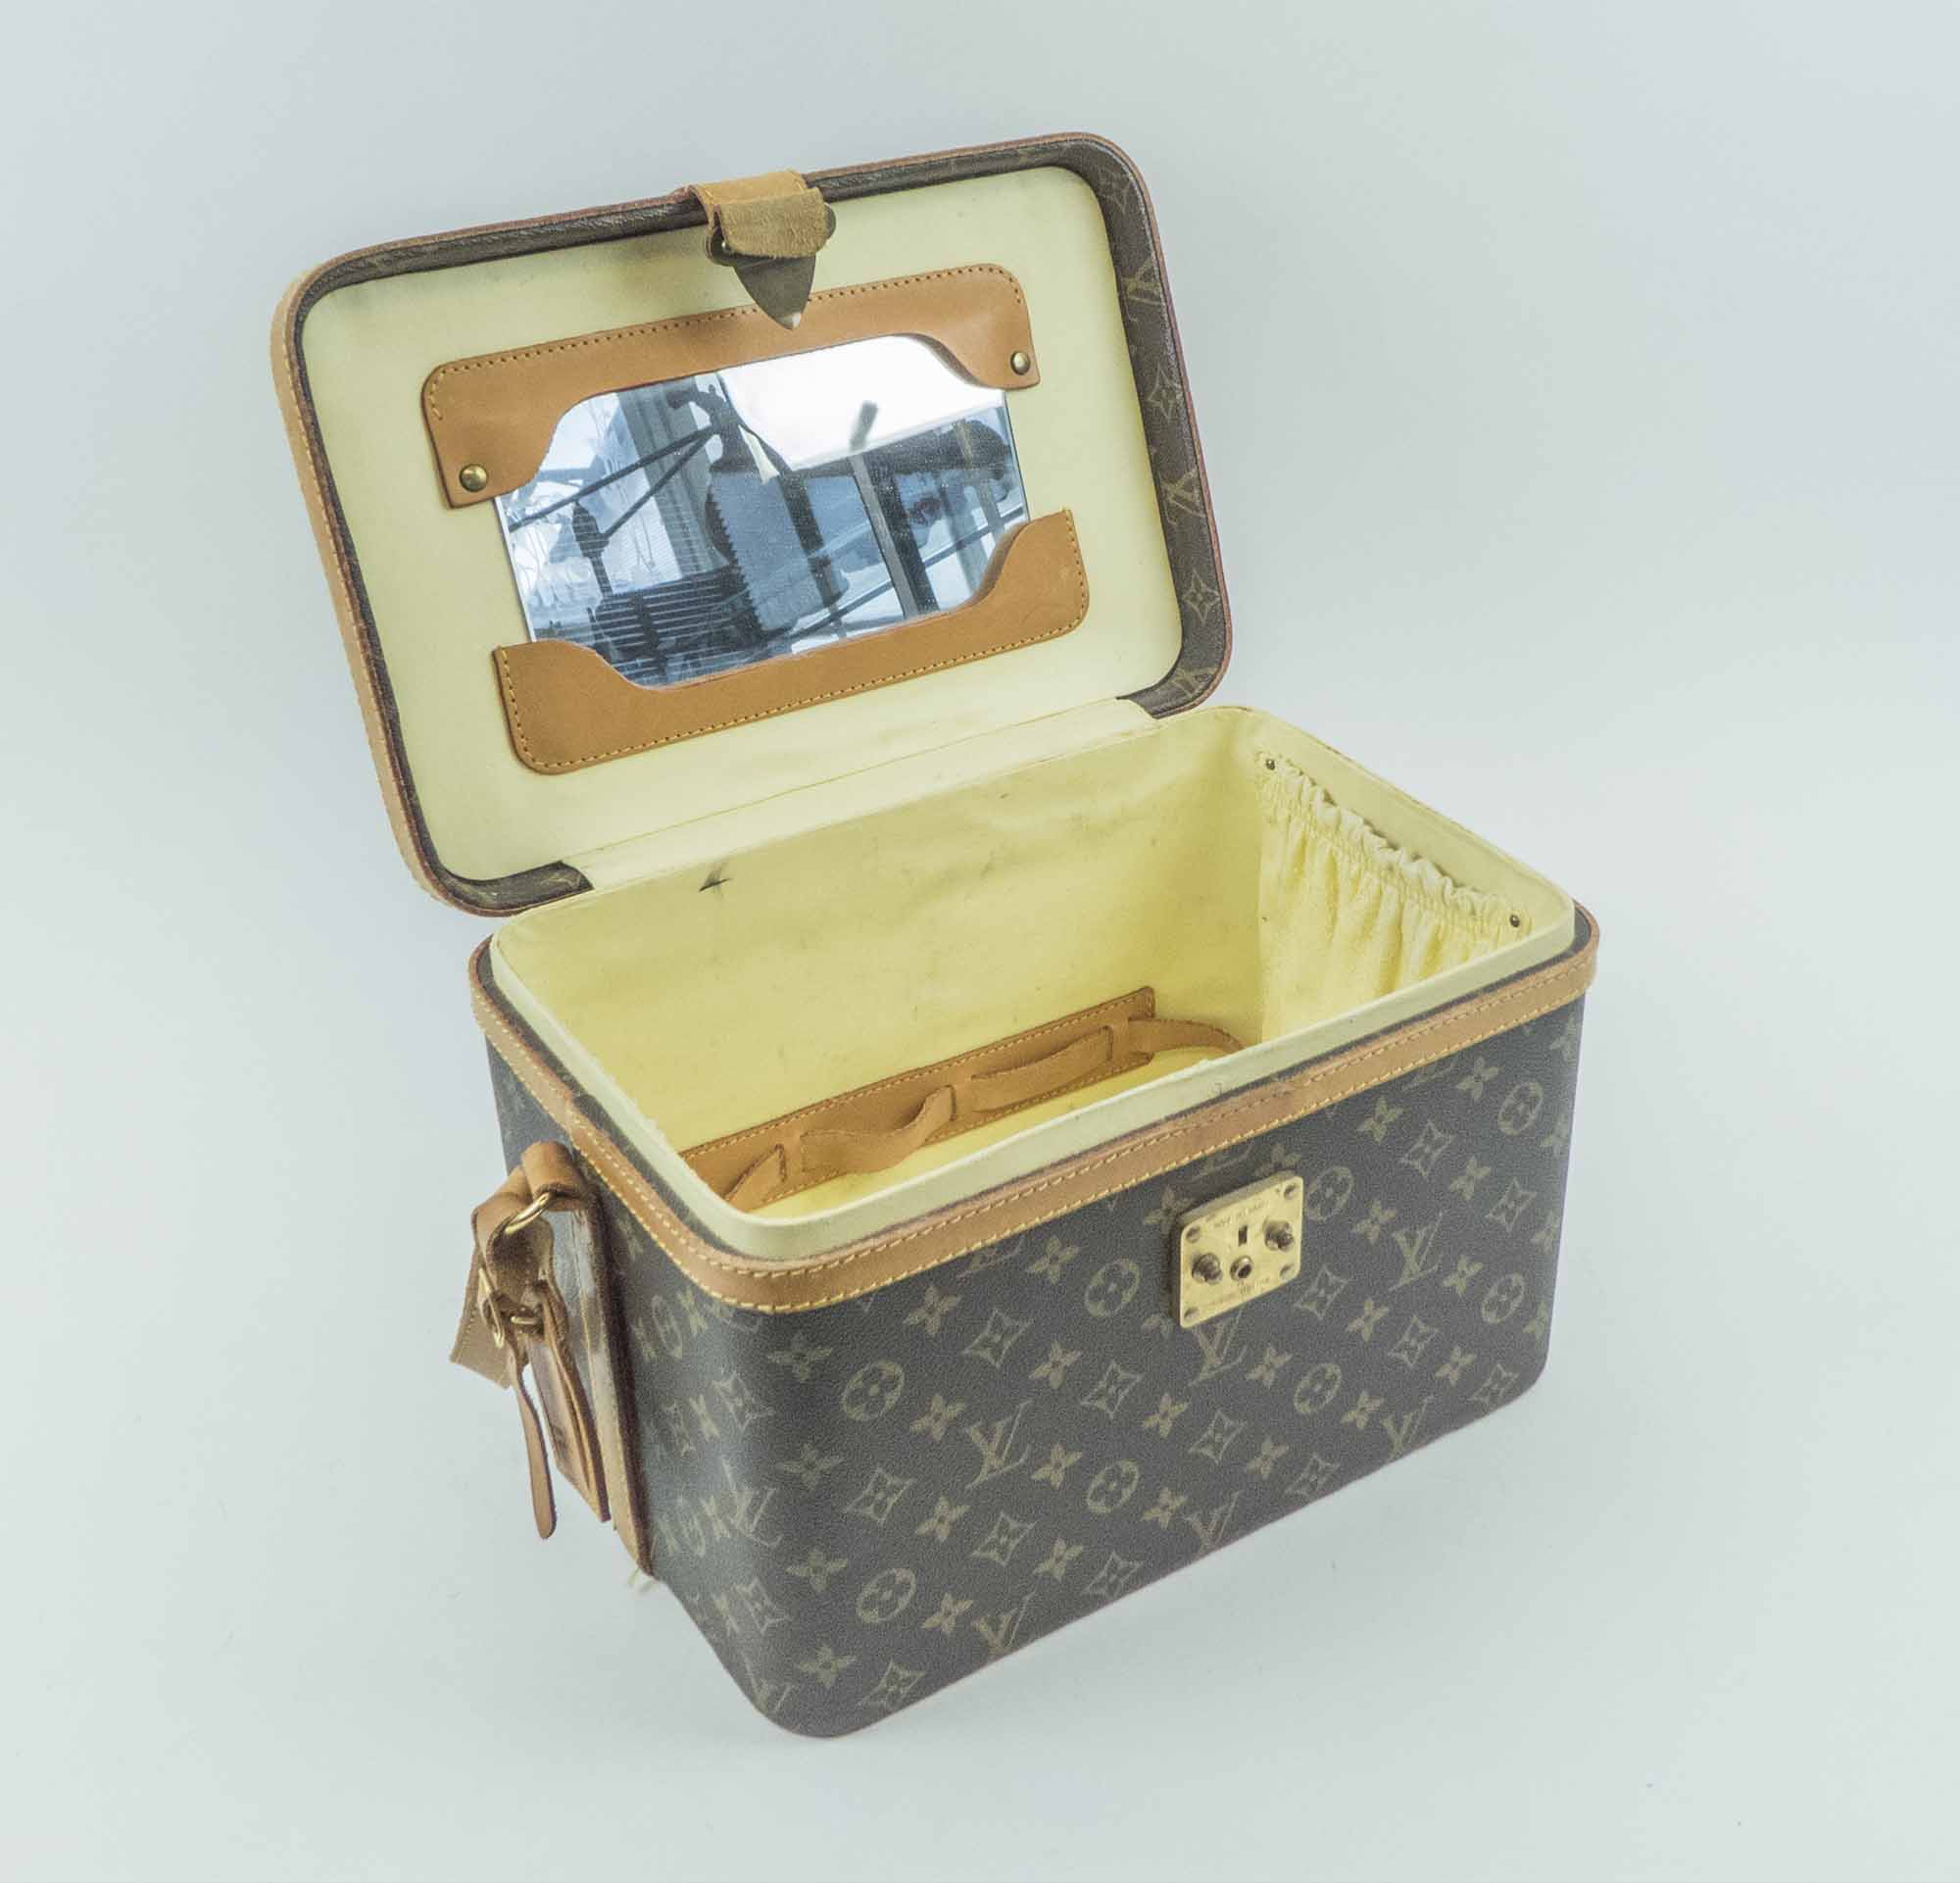 Sold at Auction: Louis Vuitton Vintage Toiletry Train Case